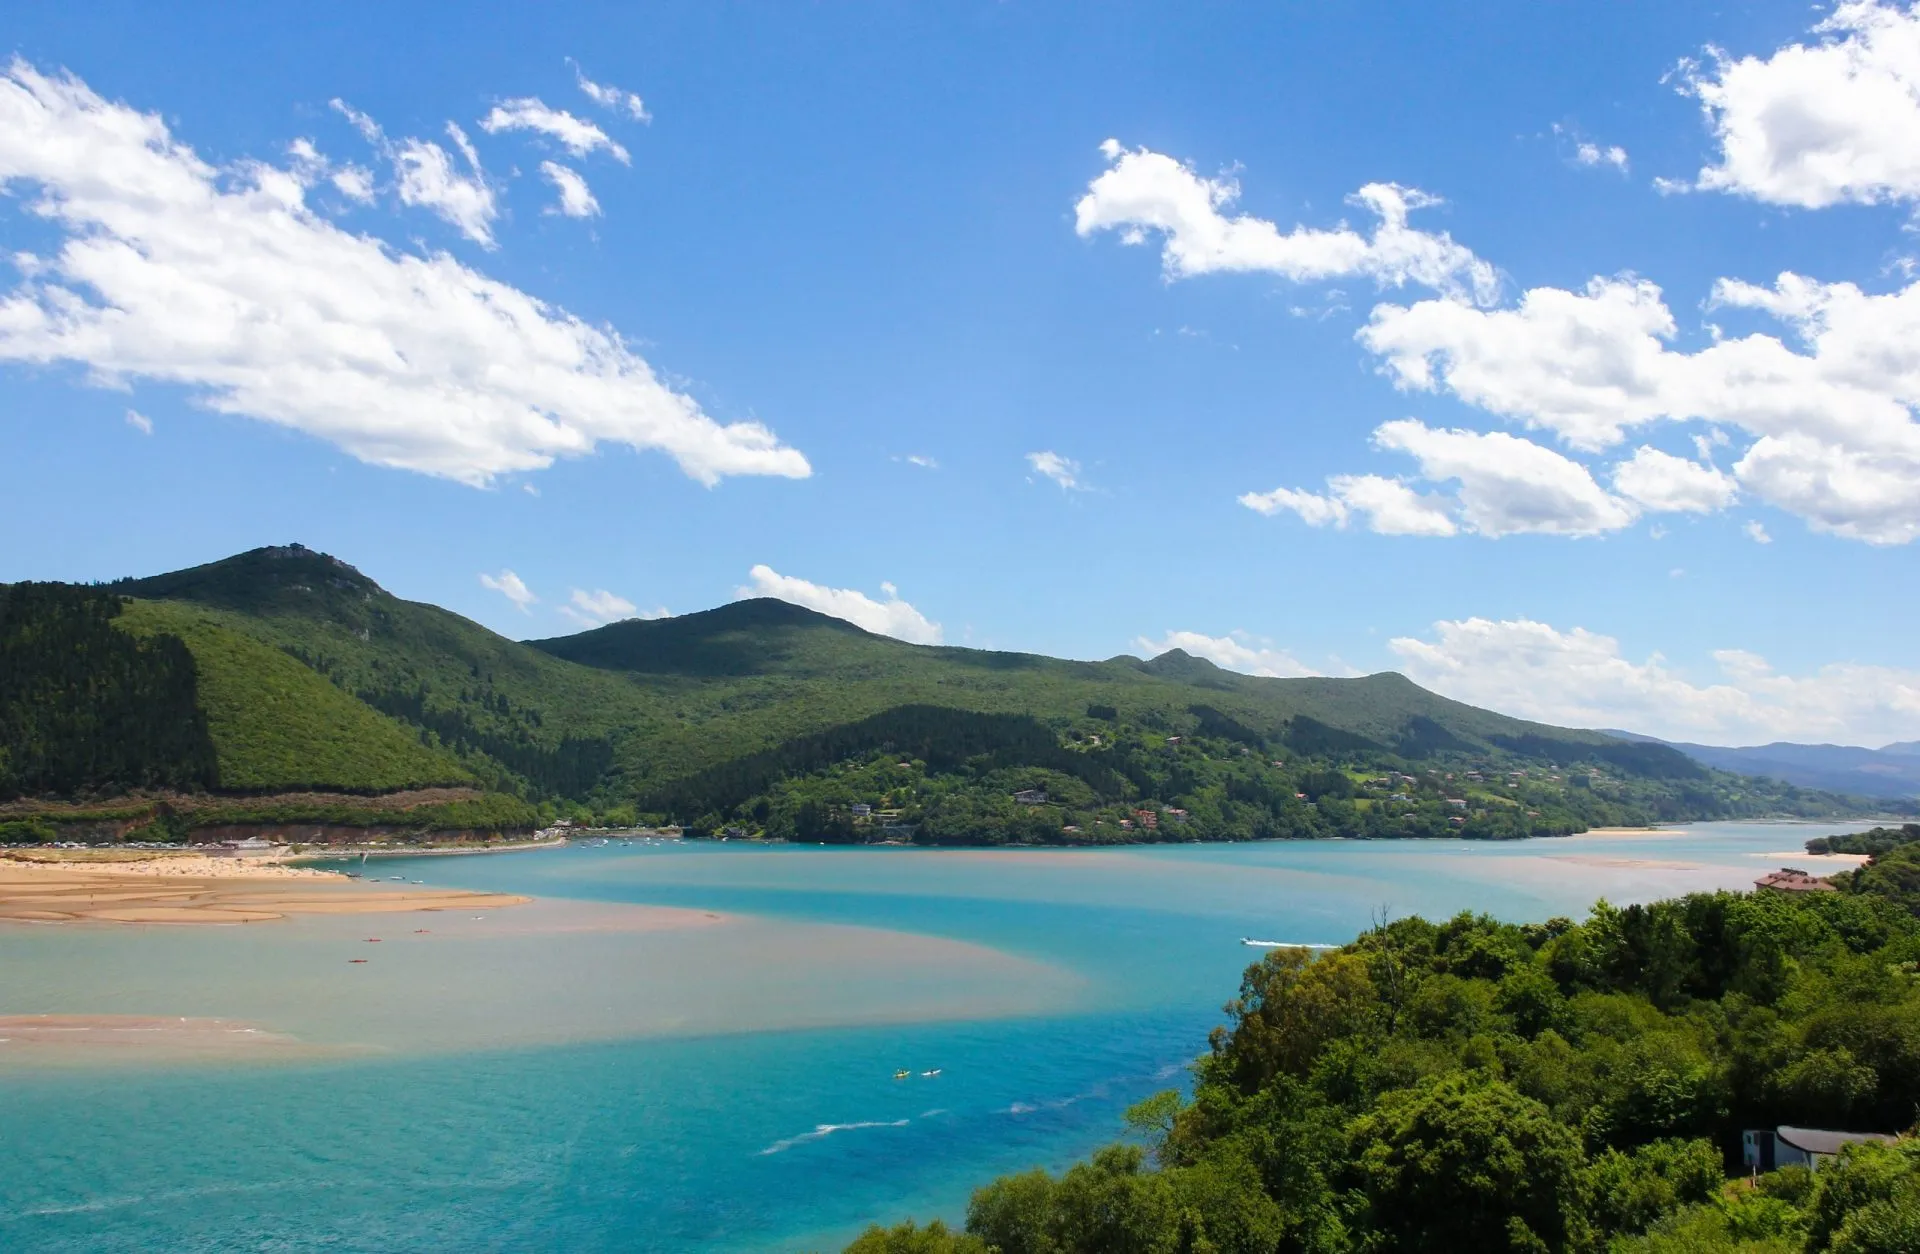 Fantastisk utsikt över biosfärområdet Urdaibai med berg, blå himmel och vita moln i bakgrunden, i Baskien